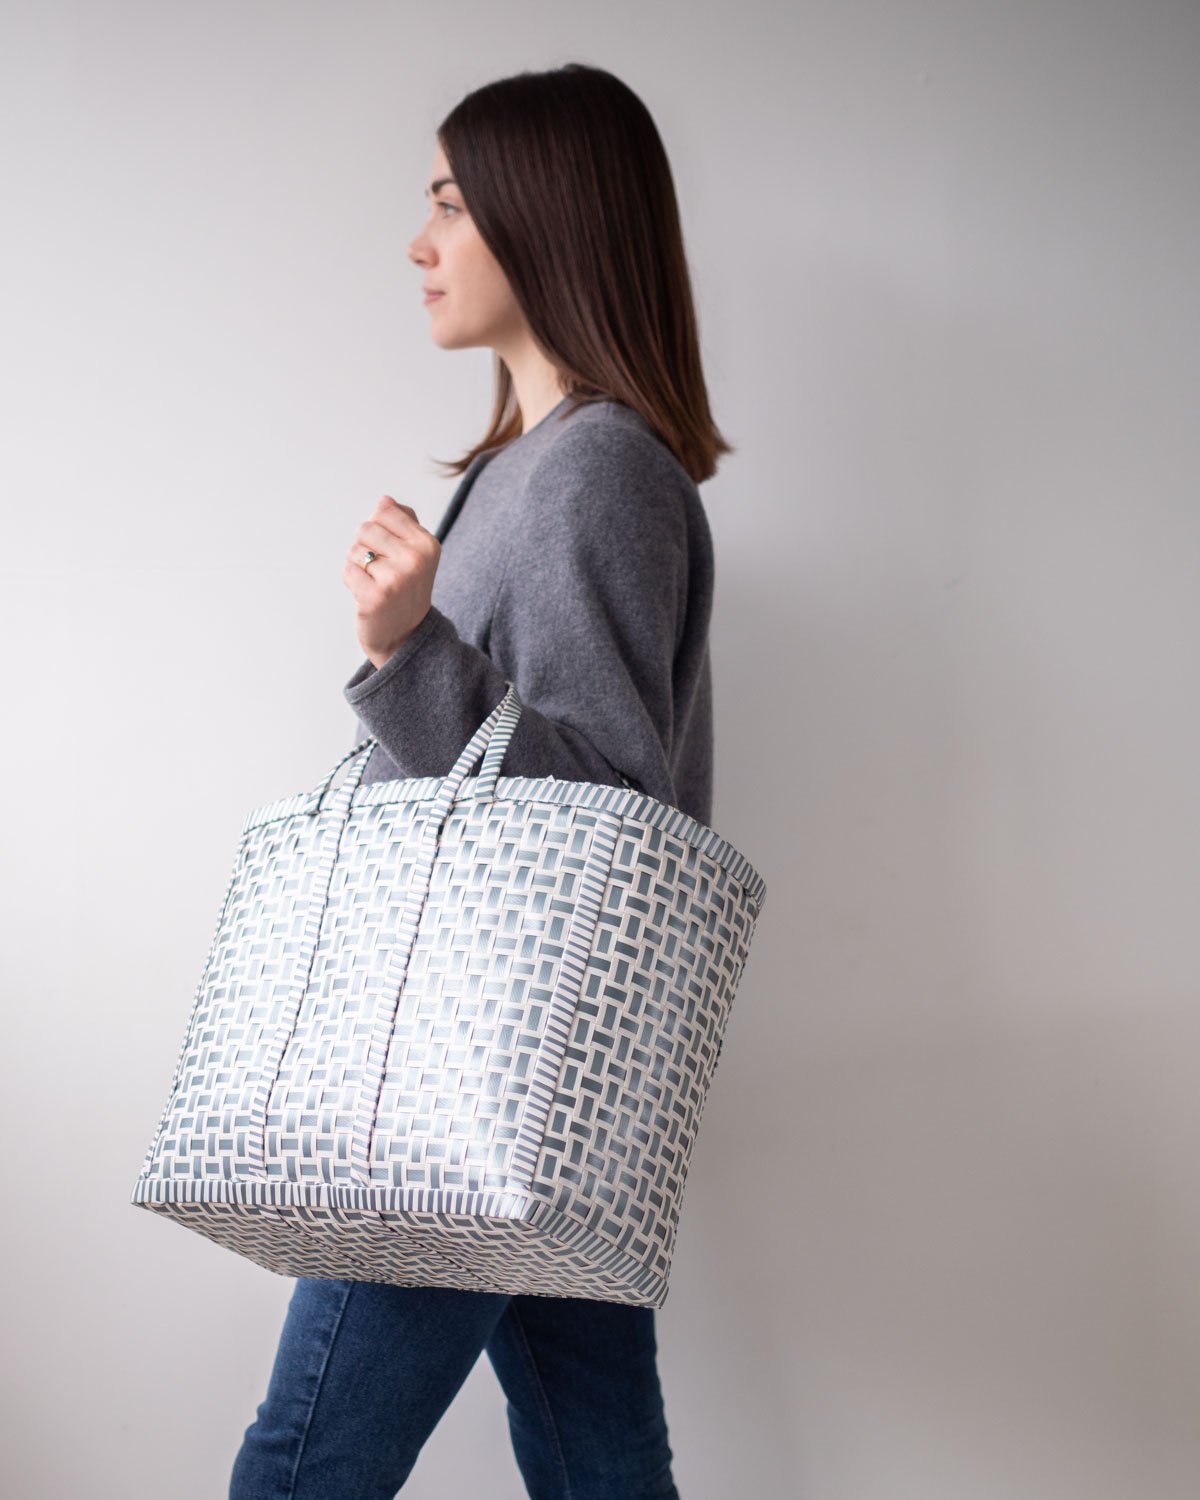 Original Basket in Grey & White | Shopper Bag - YGN Collective